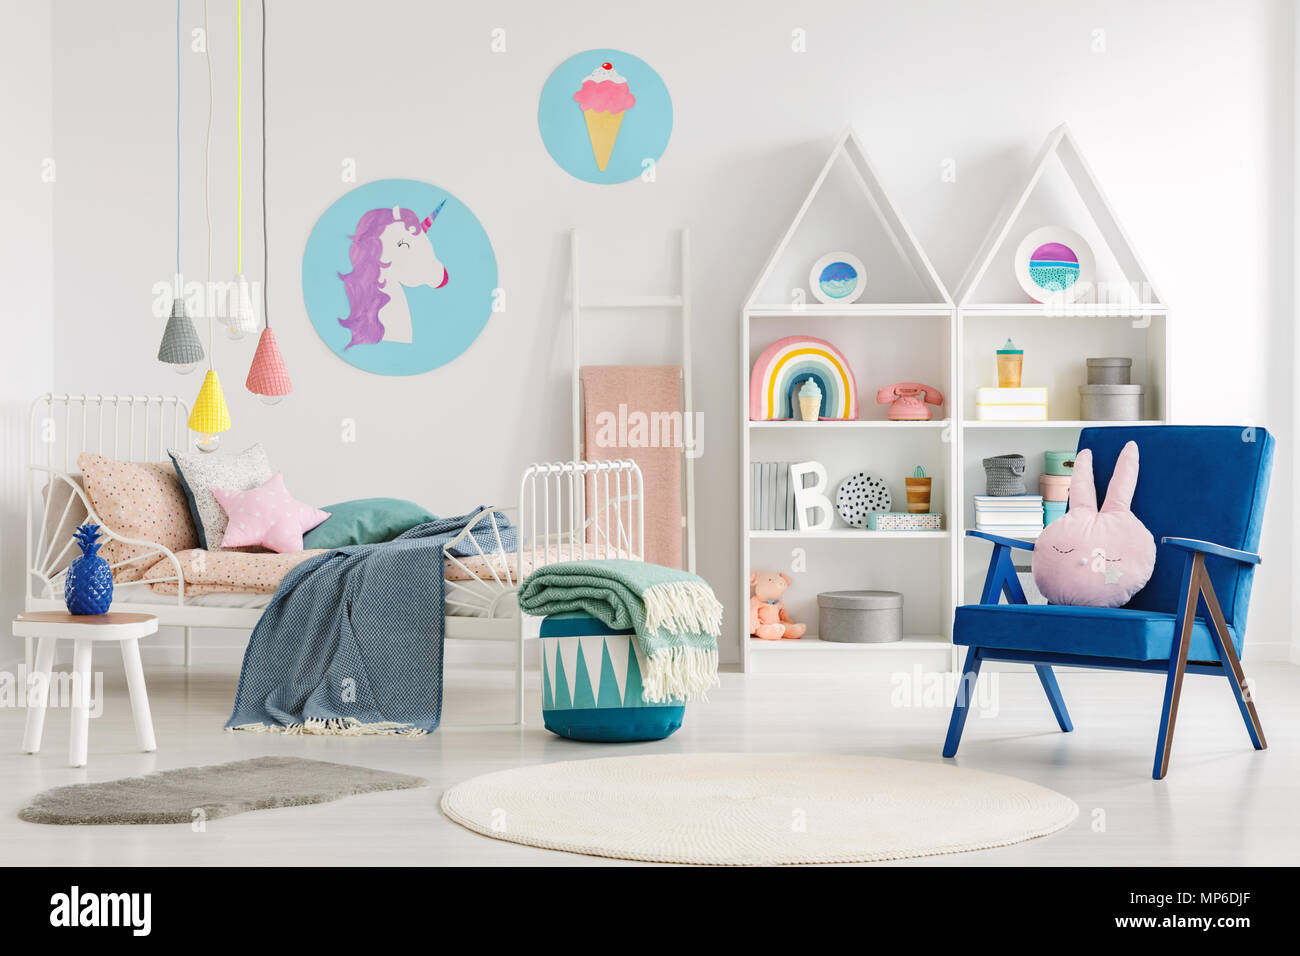 Süße Schlafzimmer für ein Kind mit einem blauen Sessel, Kaninchen Kissen, Bett, Einhorn, Eis Poster und Regale Stockfoto